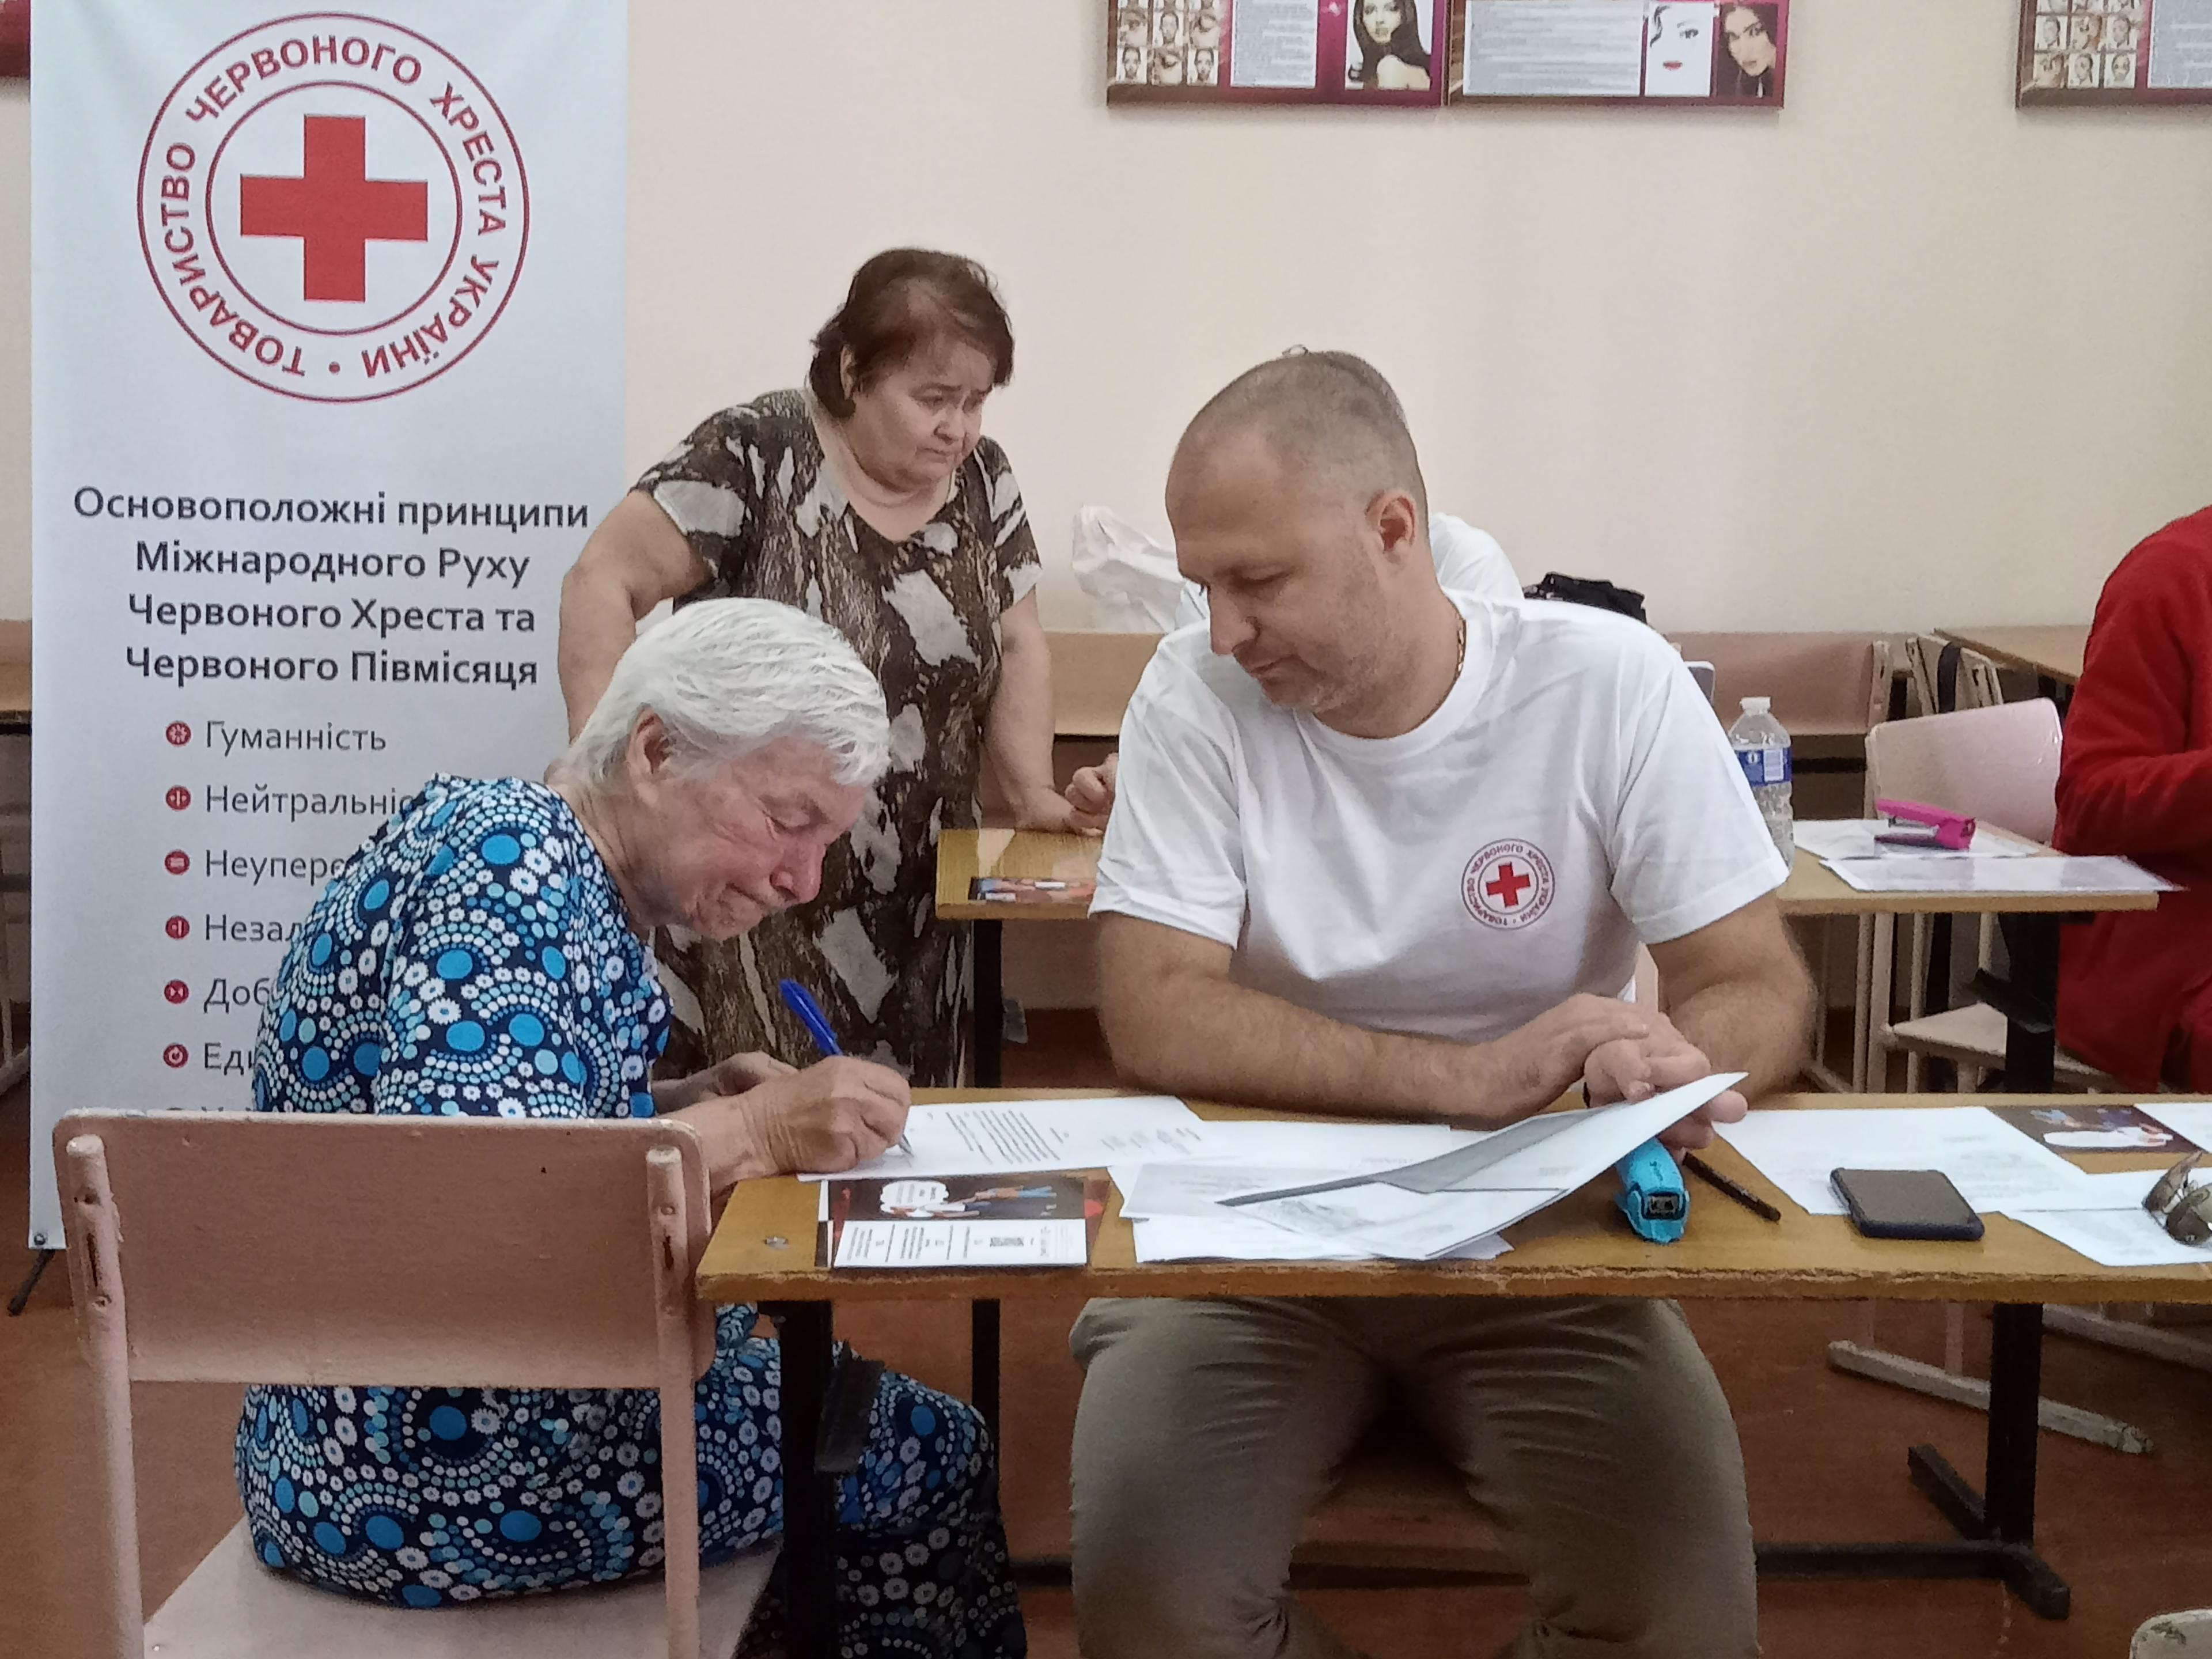 4.	Une femme âgée remplit des documents à une table. Un homme à ses côtés tient une partie des documents. Sur son t-shirt figure un logo de la Croix-Rouge. L’homme semble assister la femme pour remplir les documents.